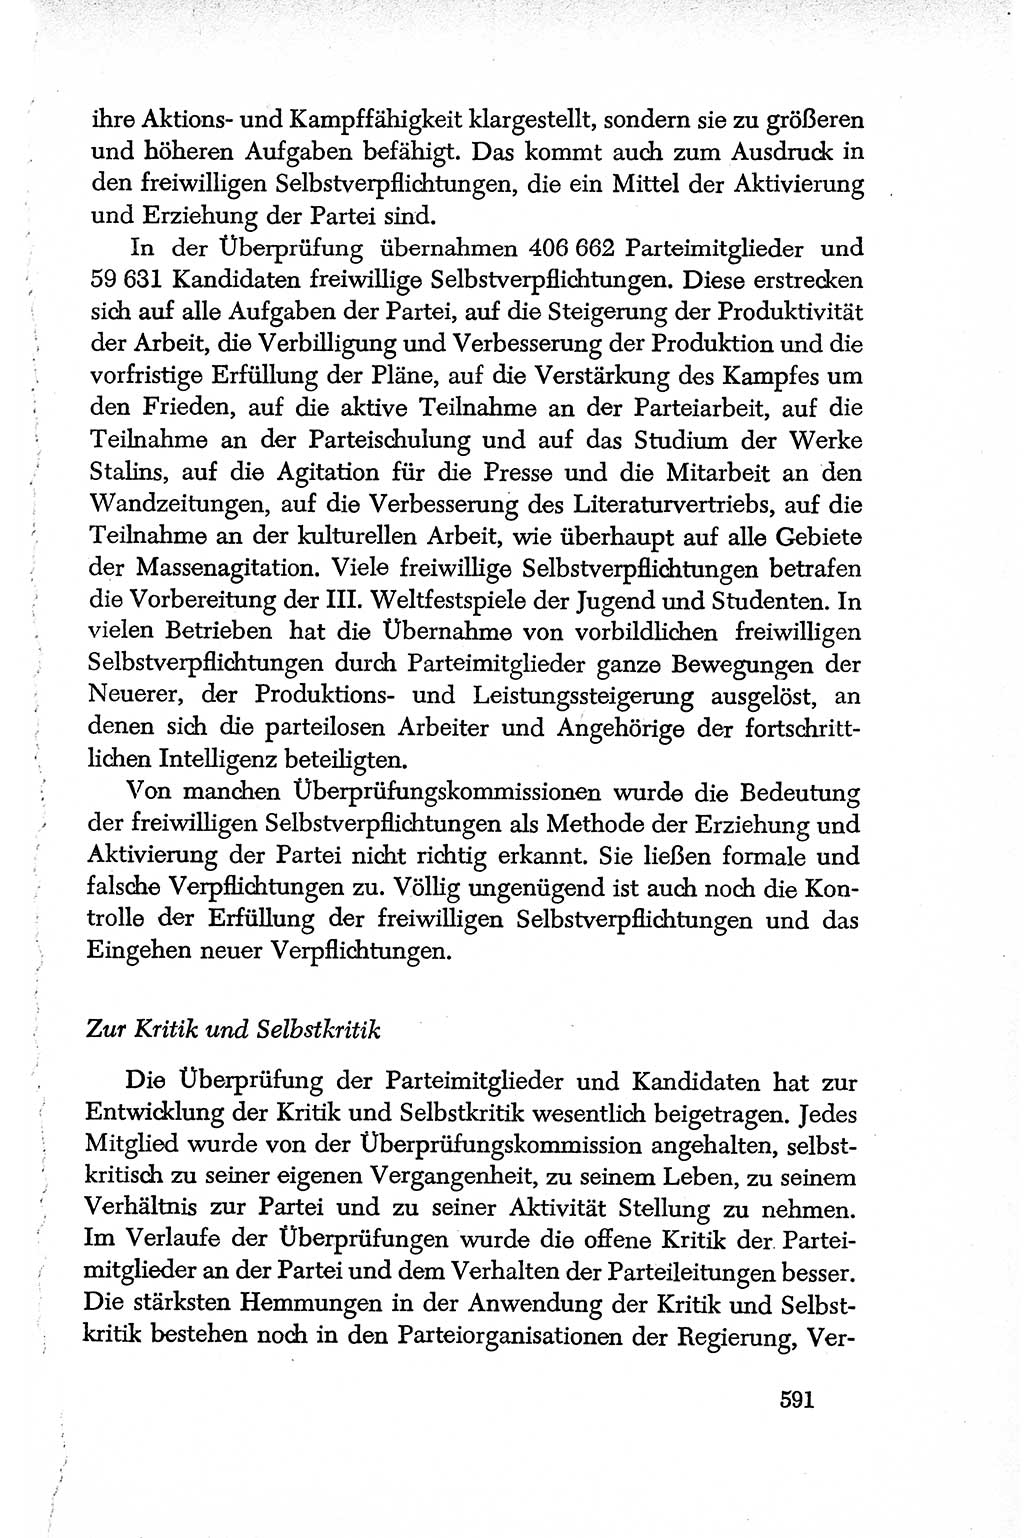 Dokumente der Sozialistischen Einheitspartei Deutschlands (SED) [Deutsche Demokratische Republik (DDR)] 1950-1952, Seite 591 (Dok. SED DDR 1950-1952, S. 591)